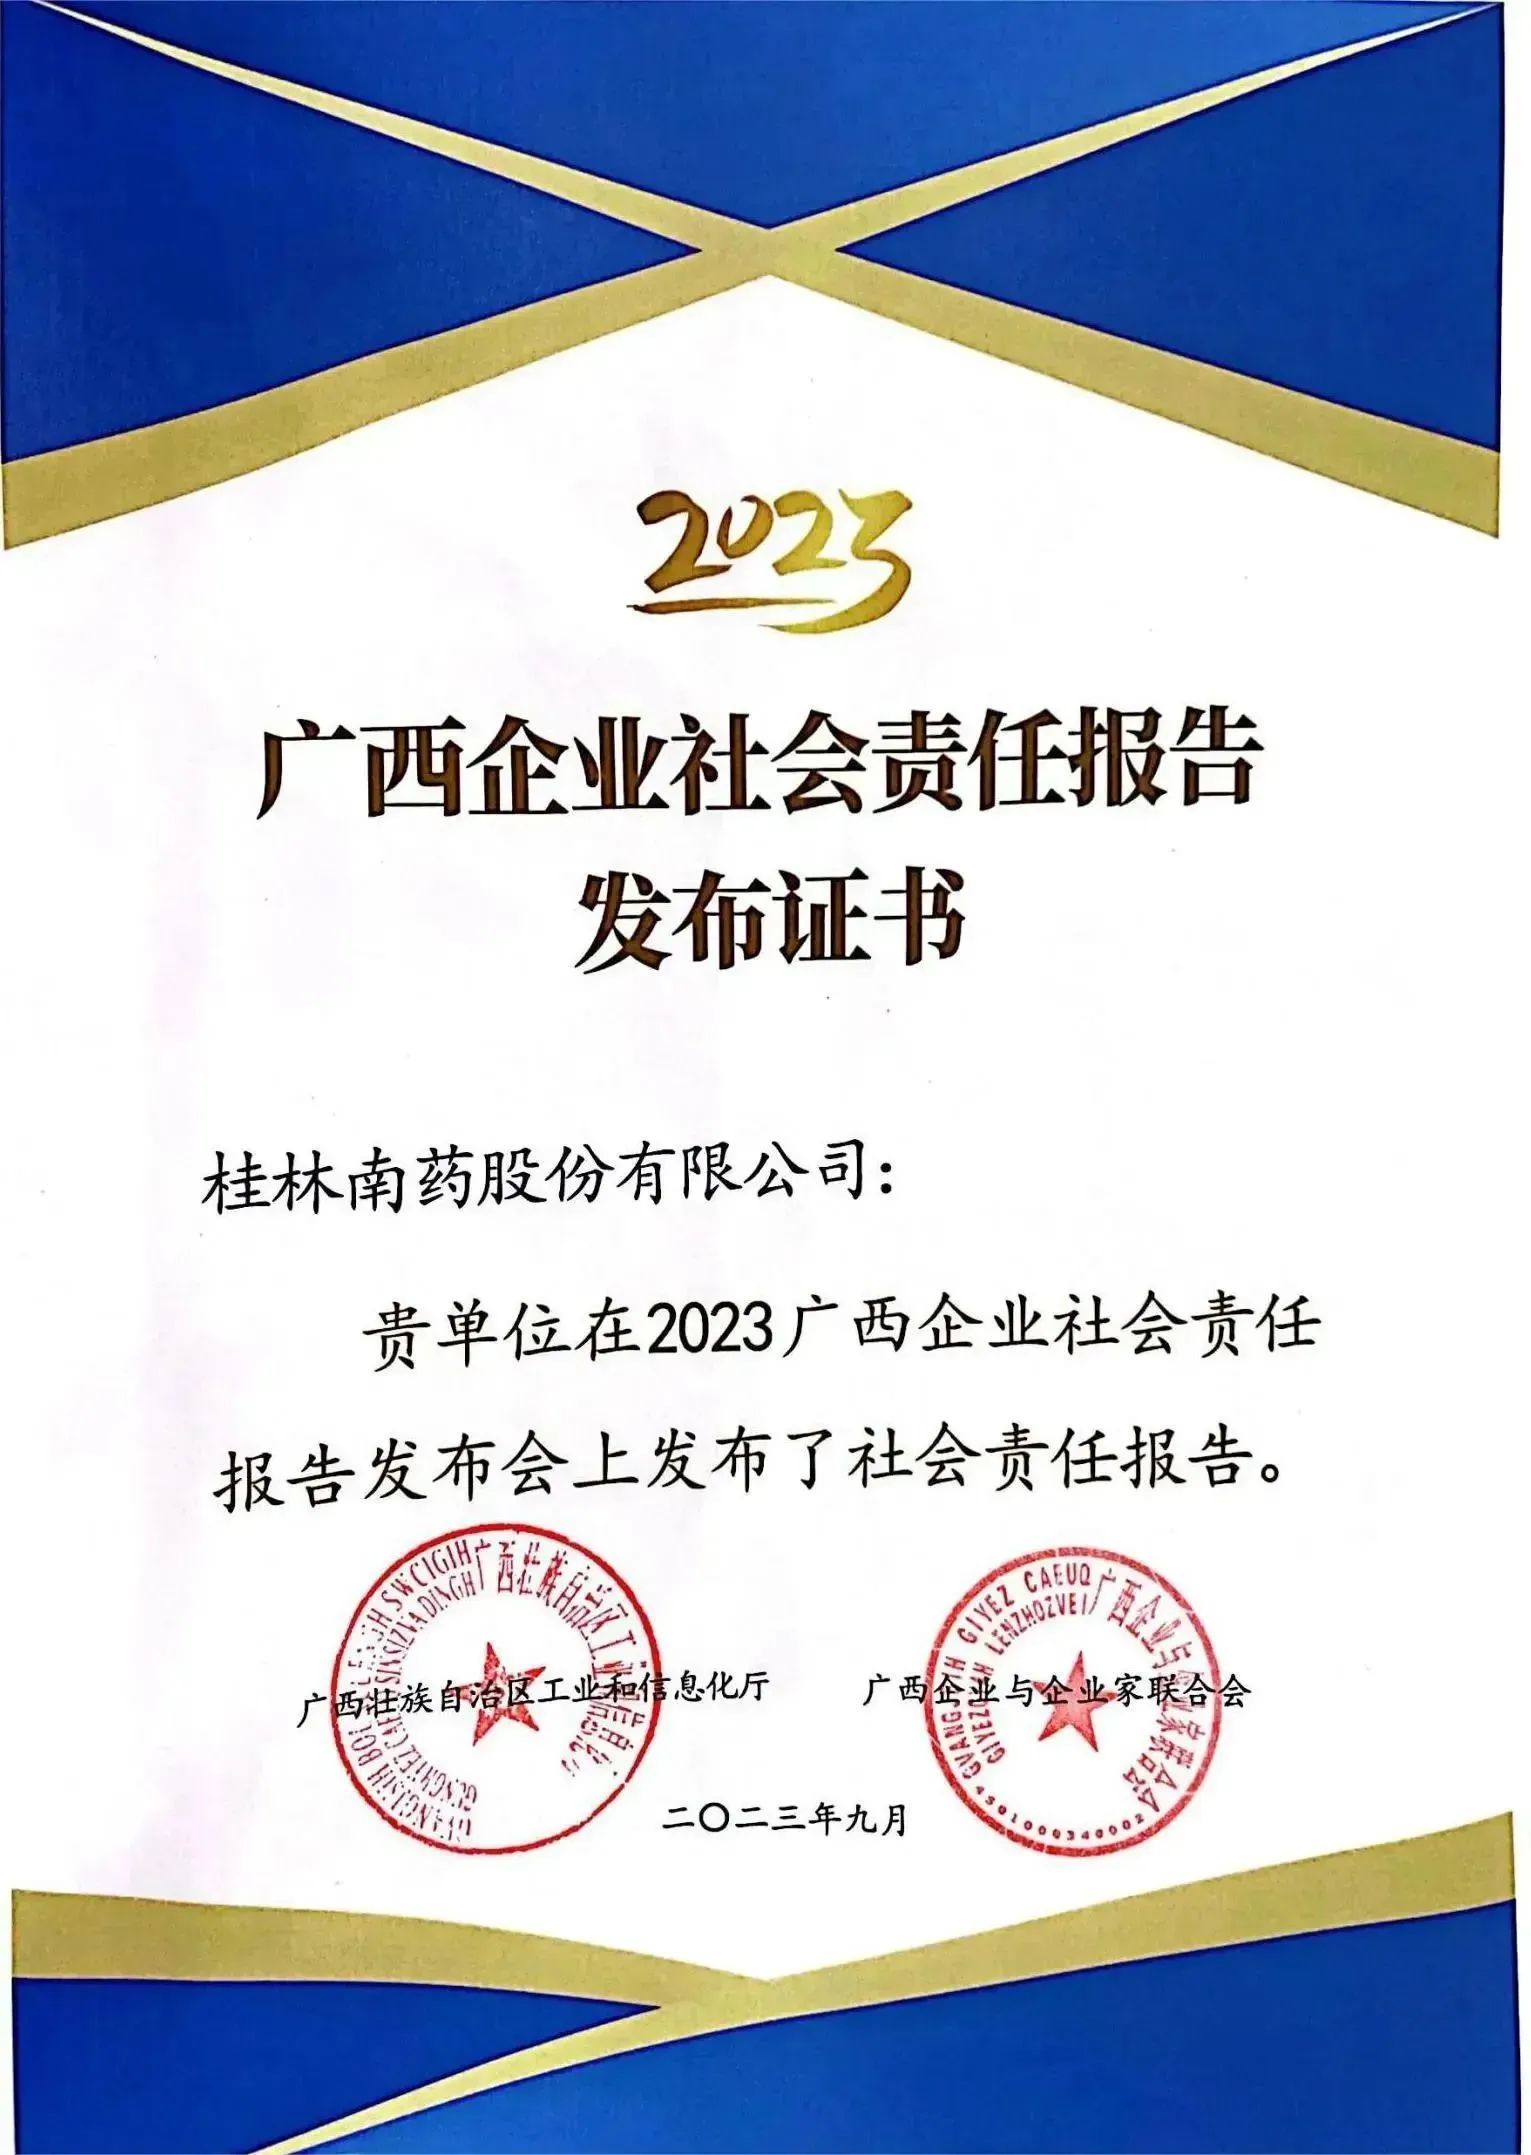 桂林南药发布2022年度社会责任报告